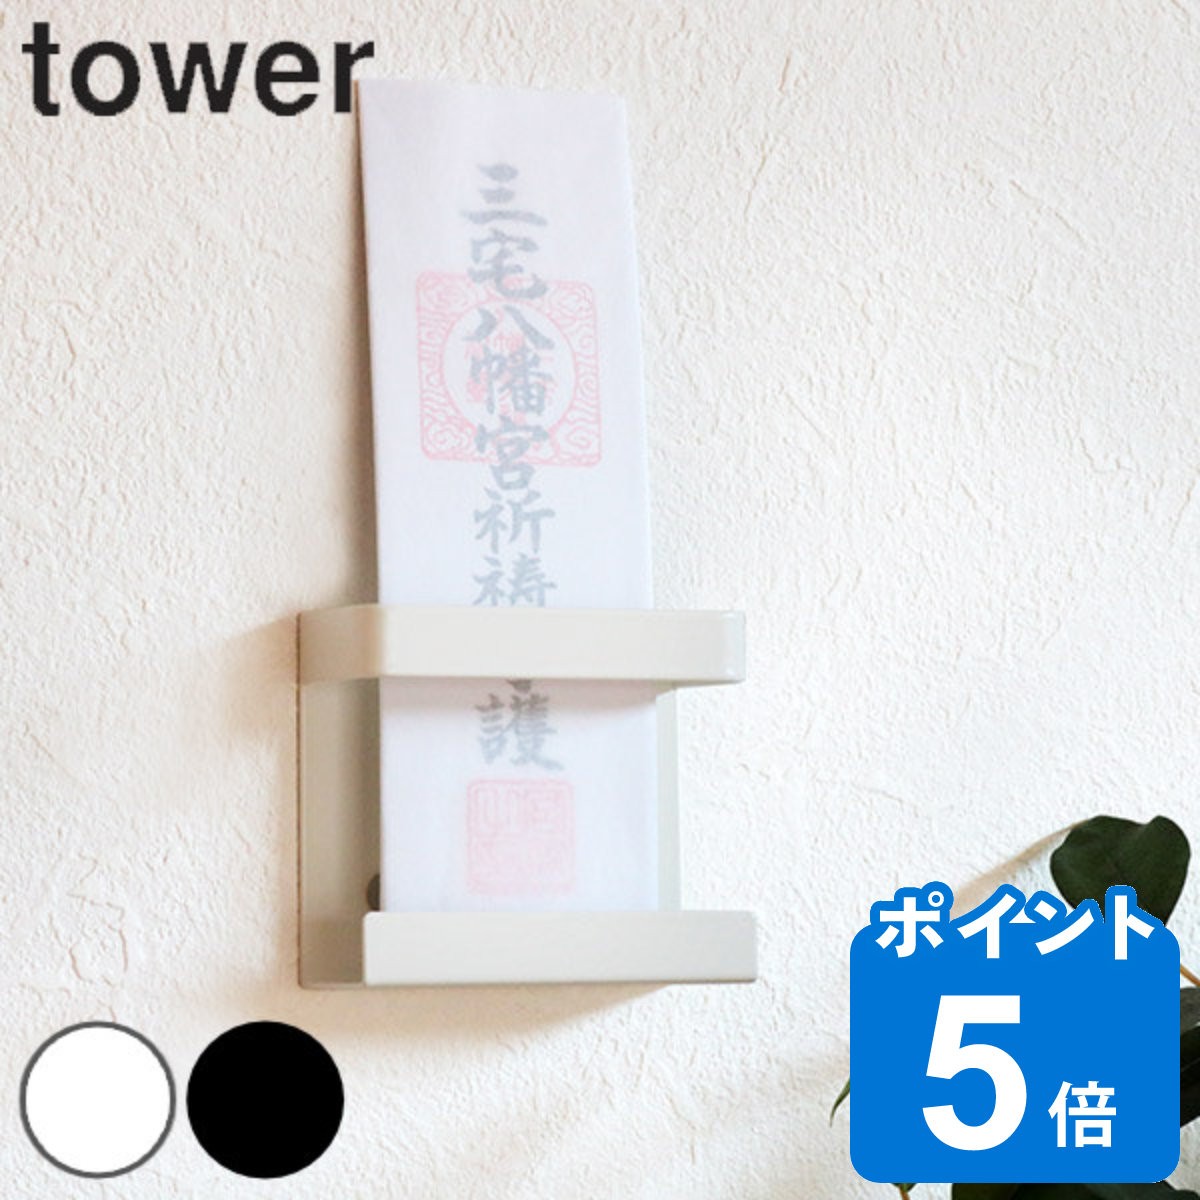 R tower _Dz_[ VO ^[